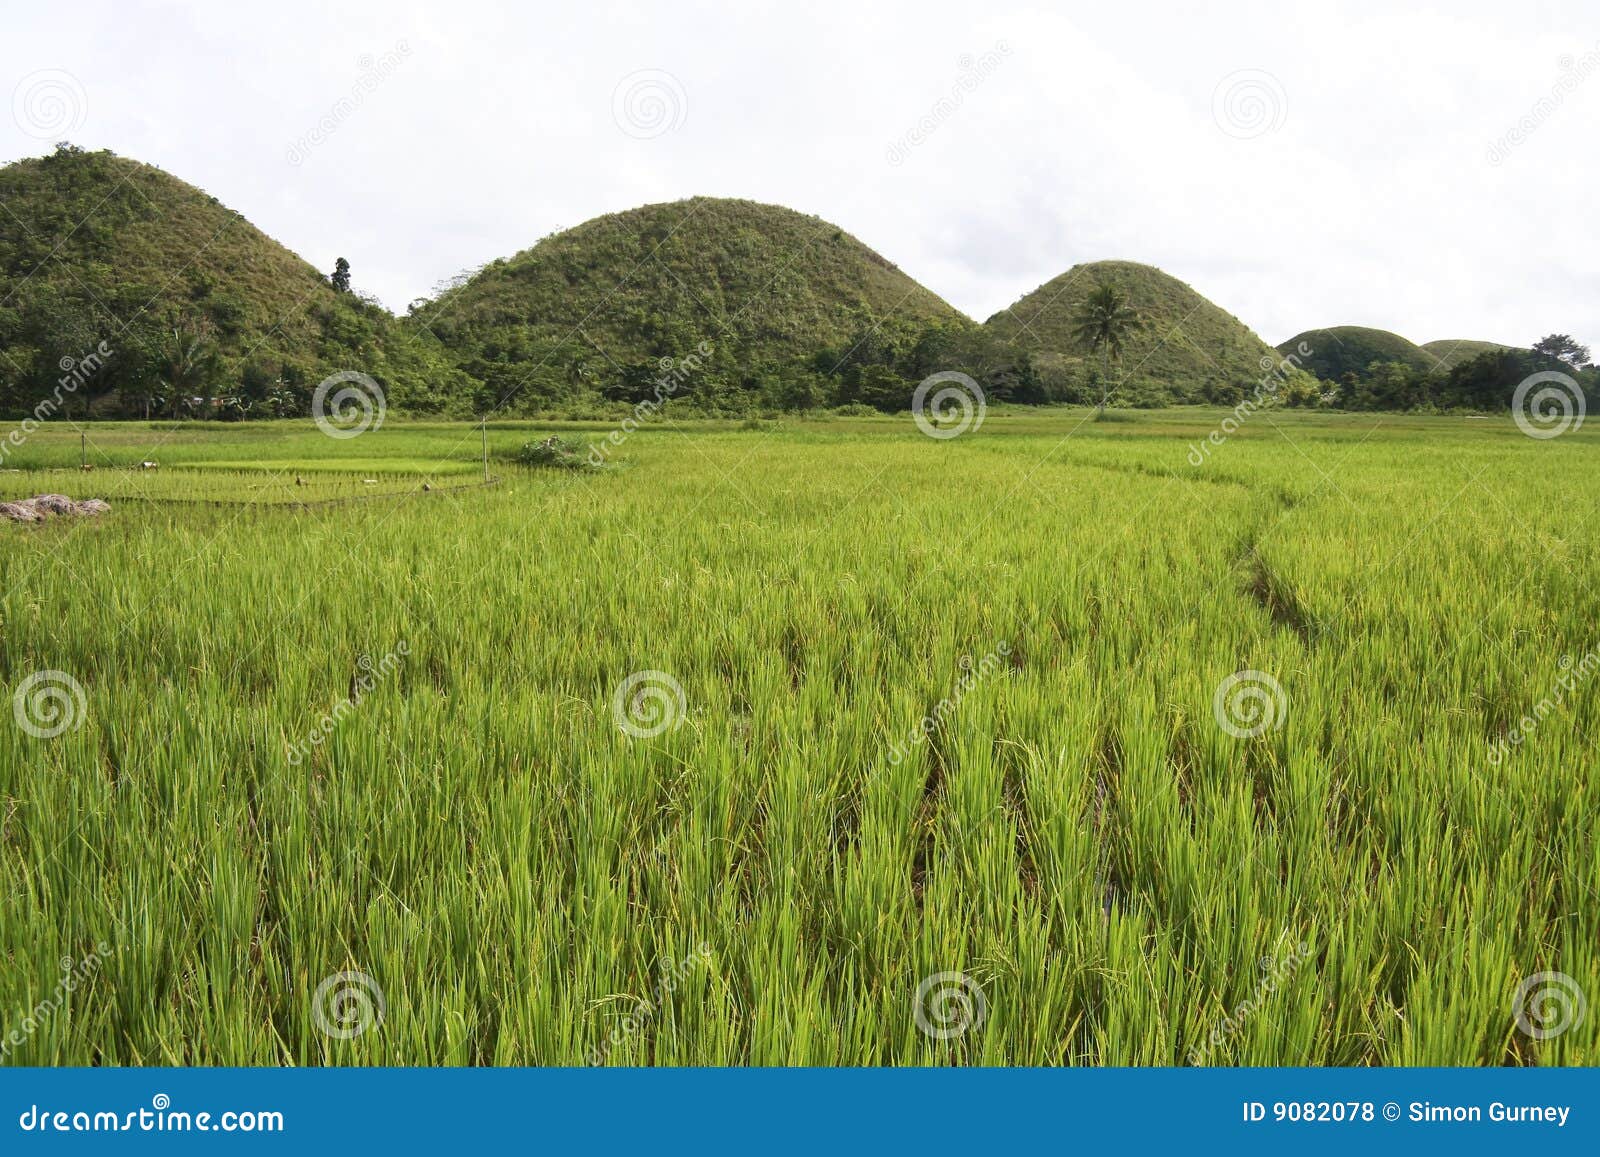 bohol chocolate hills rice paddies philippines